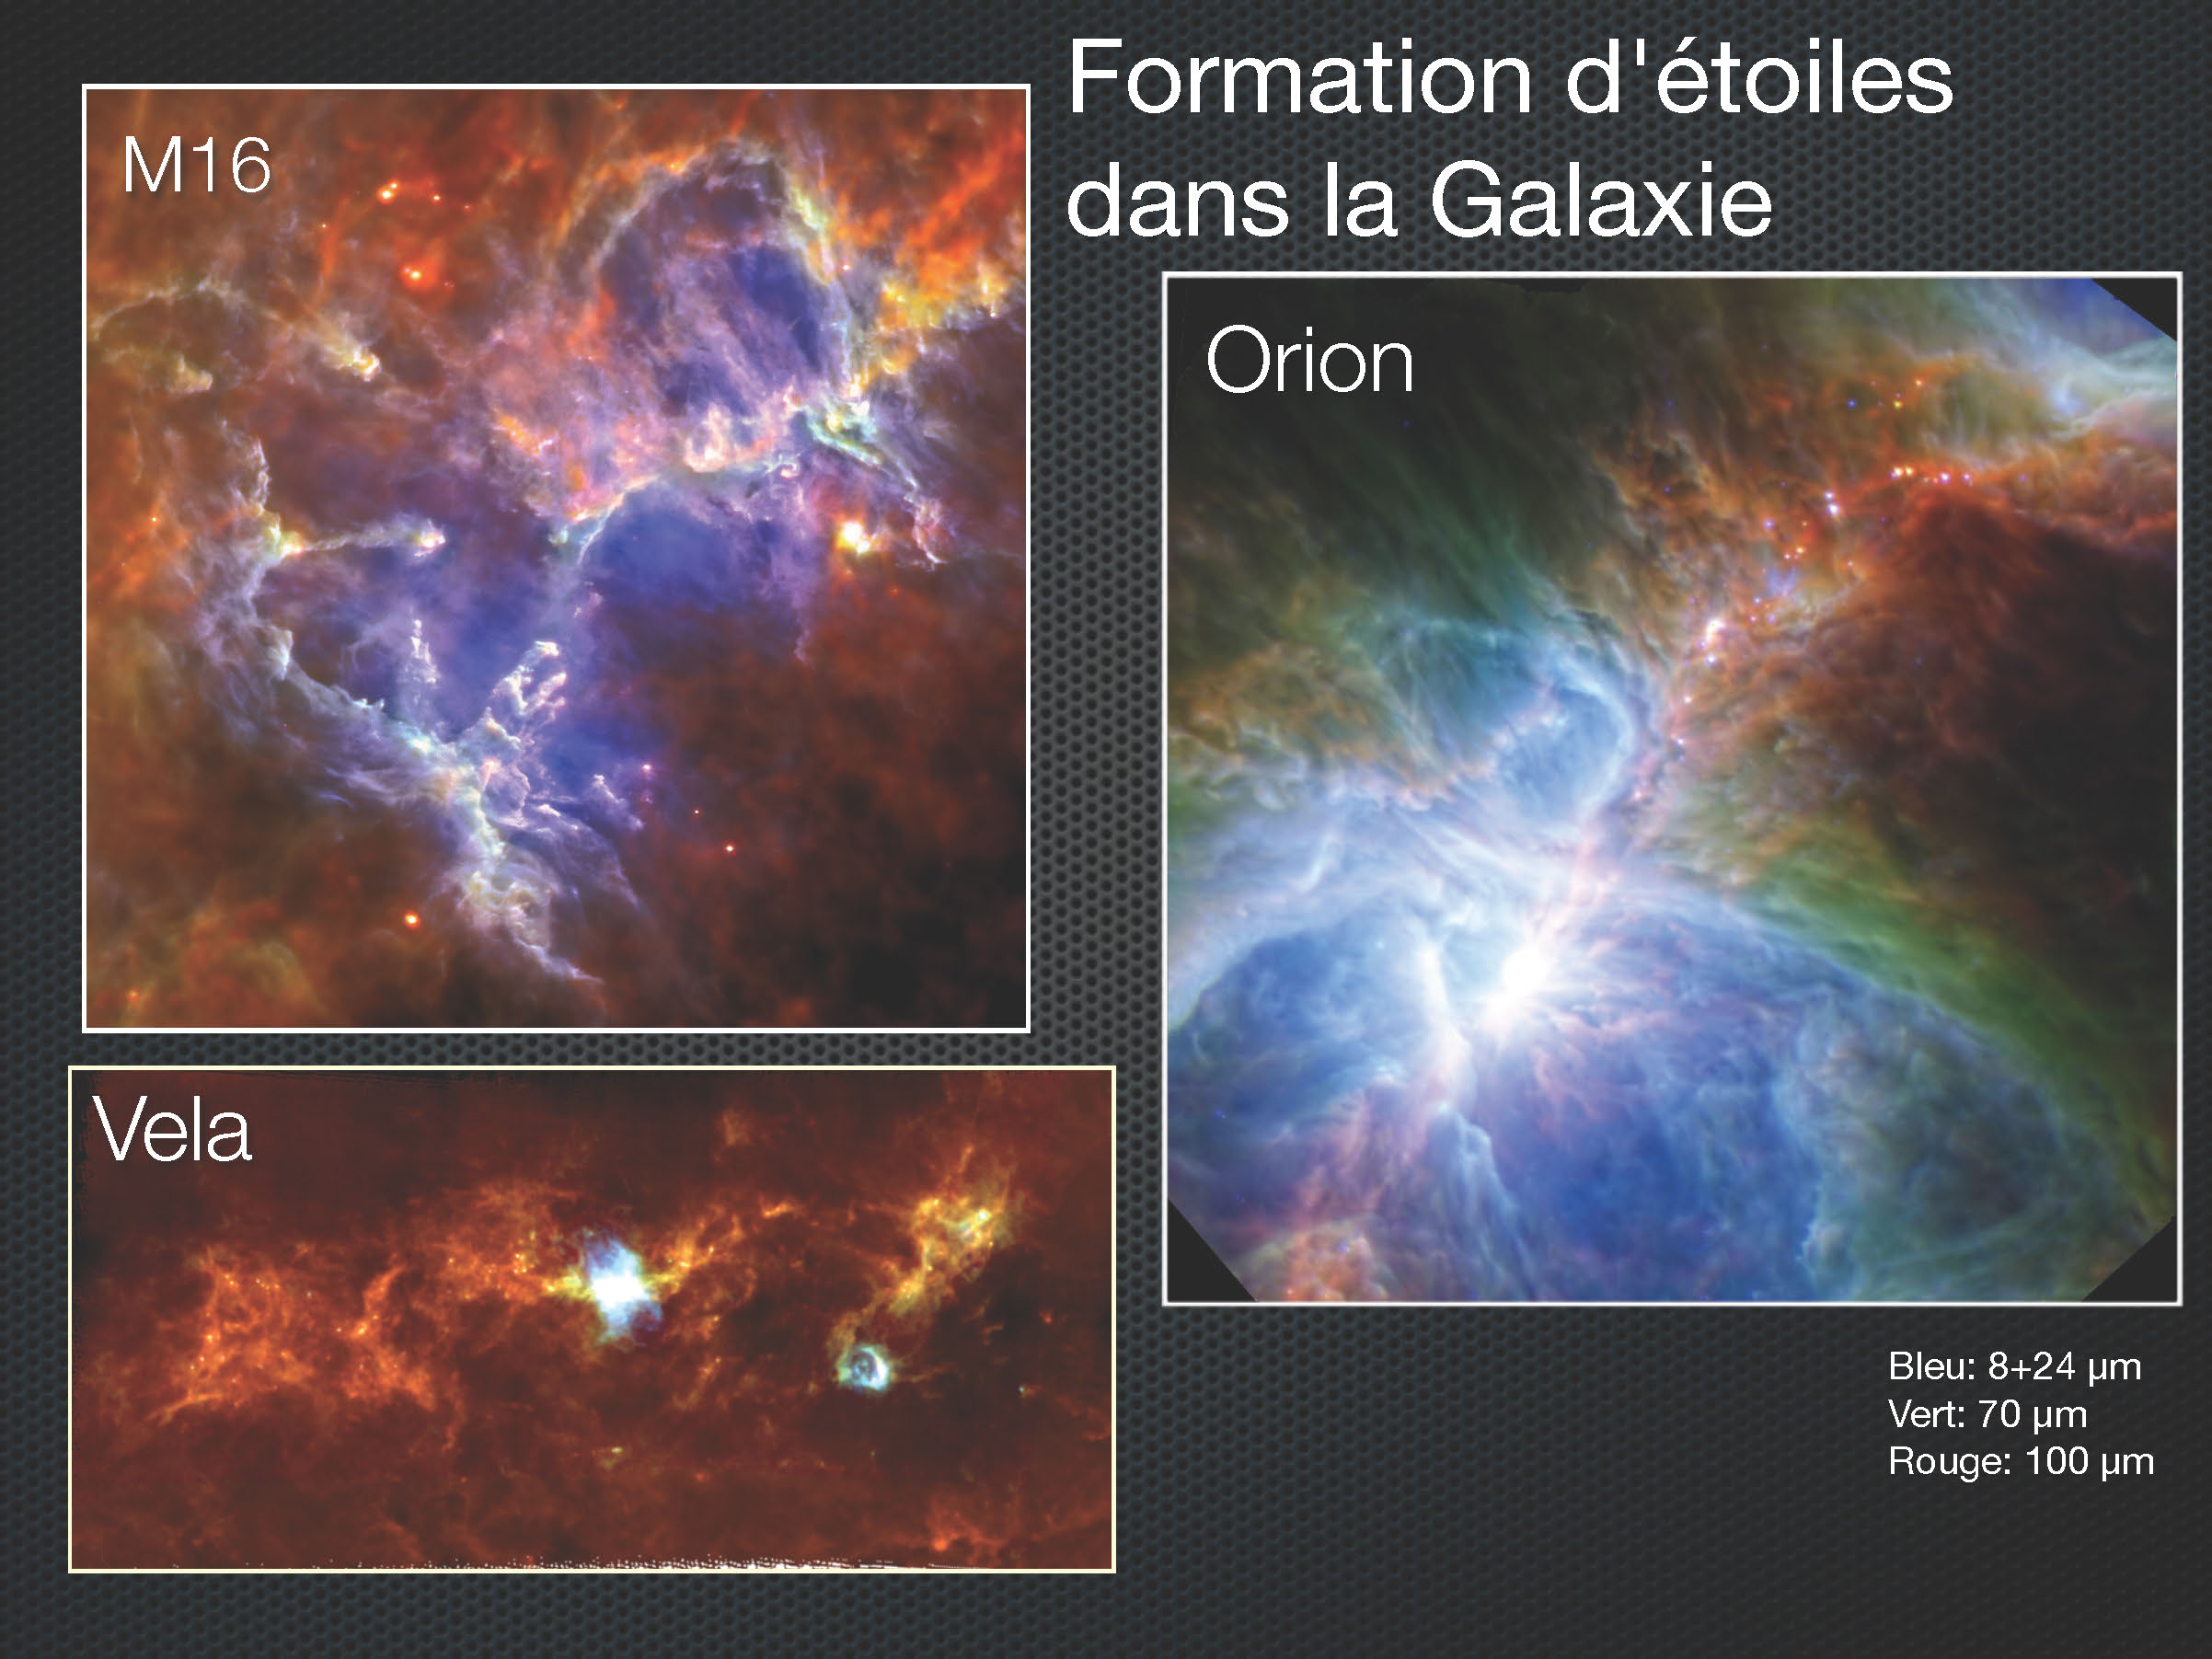 Formation d'étoiles vue par Herschel (Part 2)